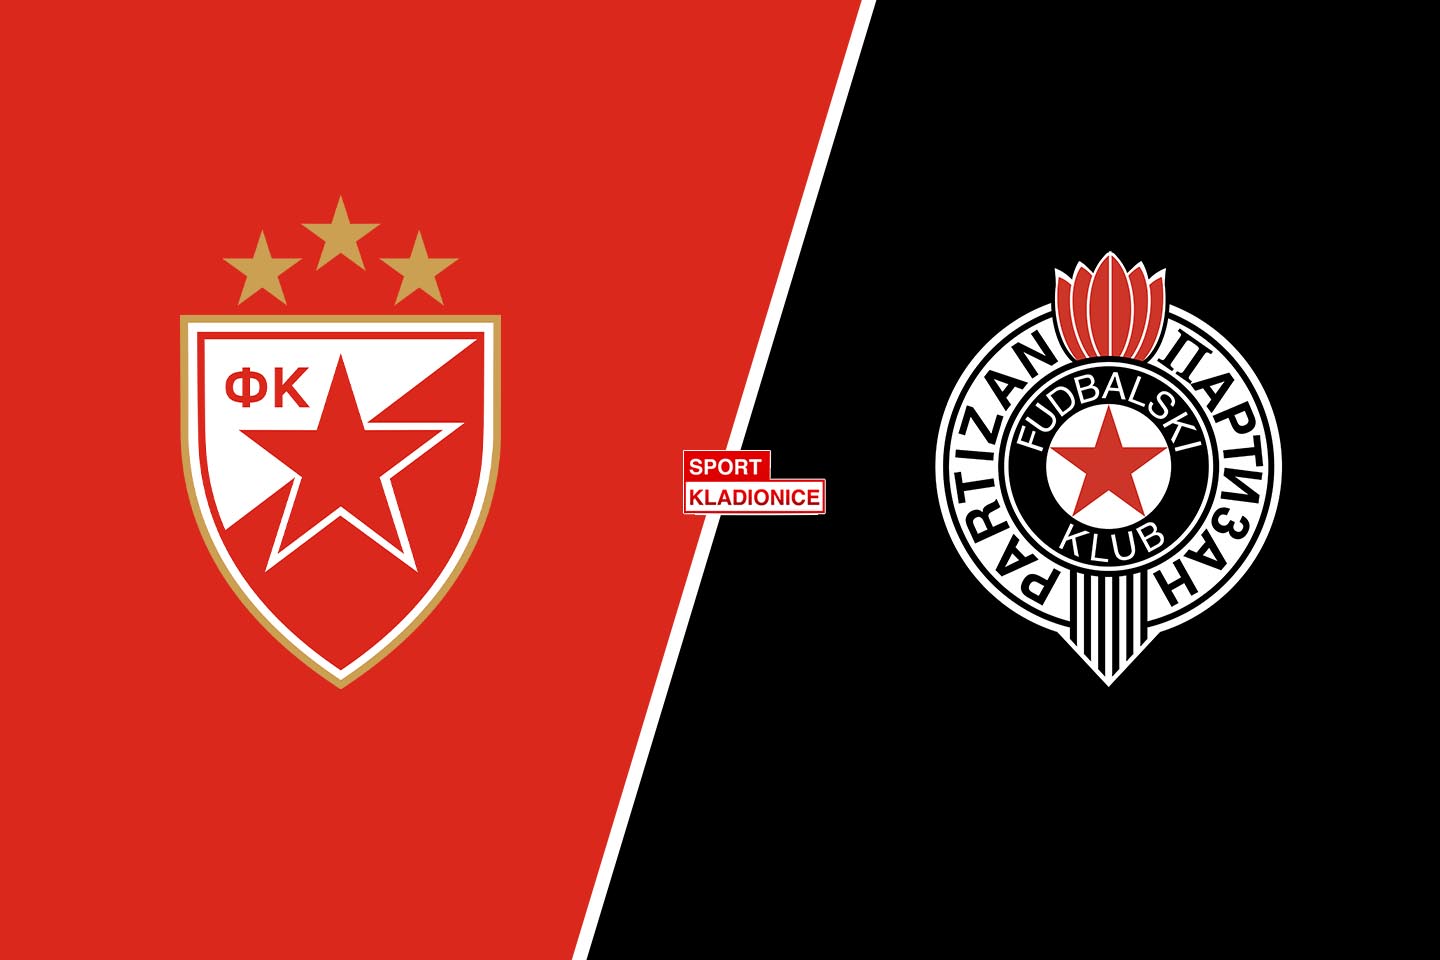 Crvena zvezda vs. Partizan